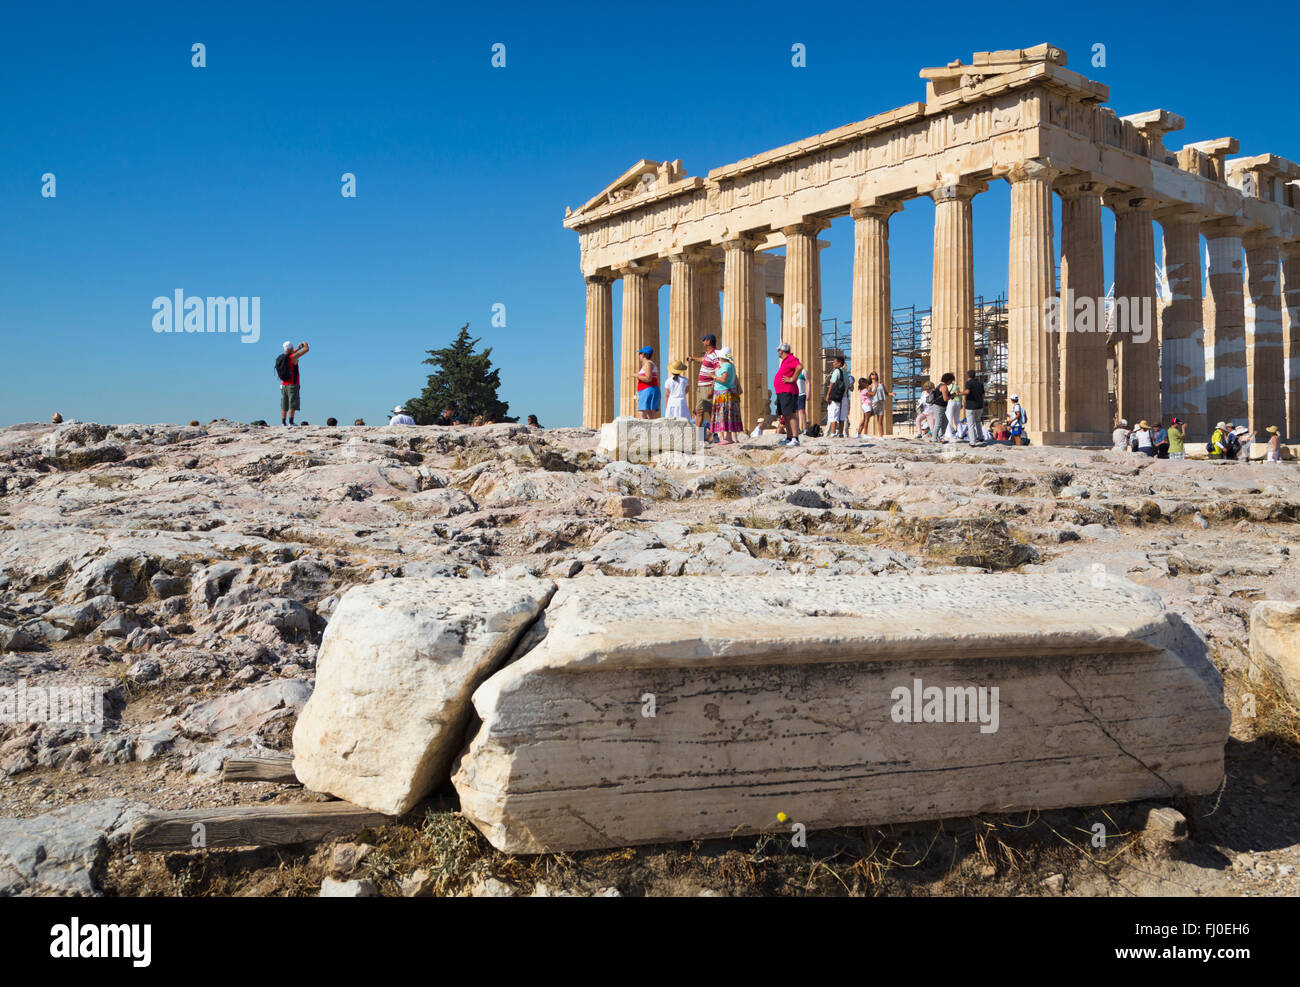 Athens, Attica, Greece.  The Parthenon on the Acropolis.  The Acropolis of Athens is a UNESCO World Heritage Site. Stock Photo